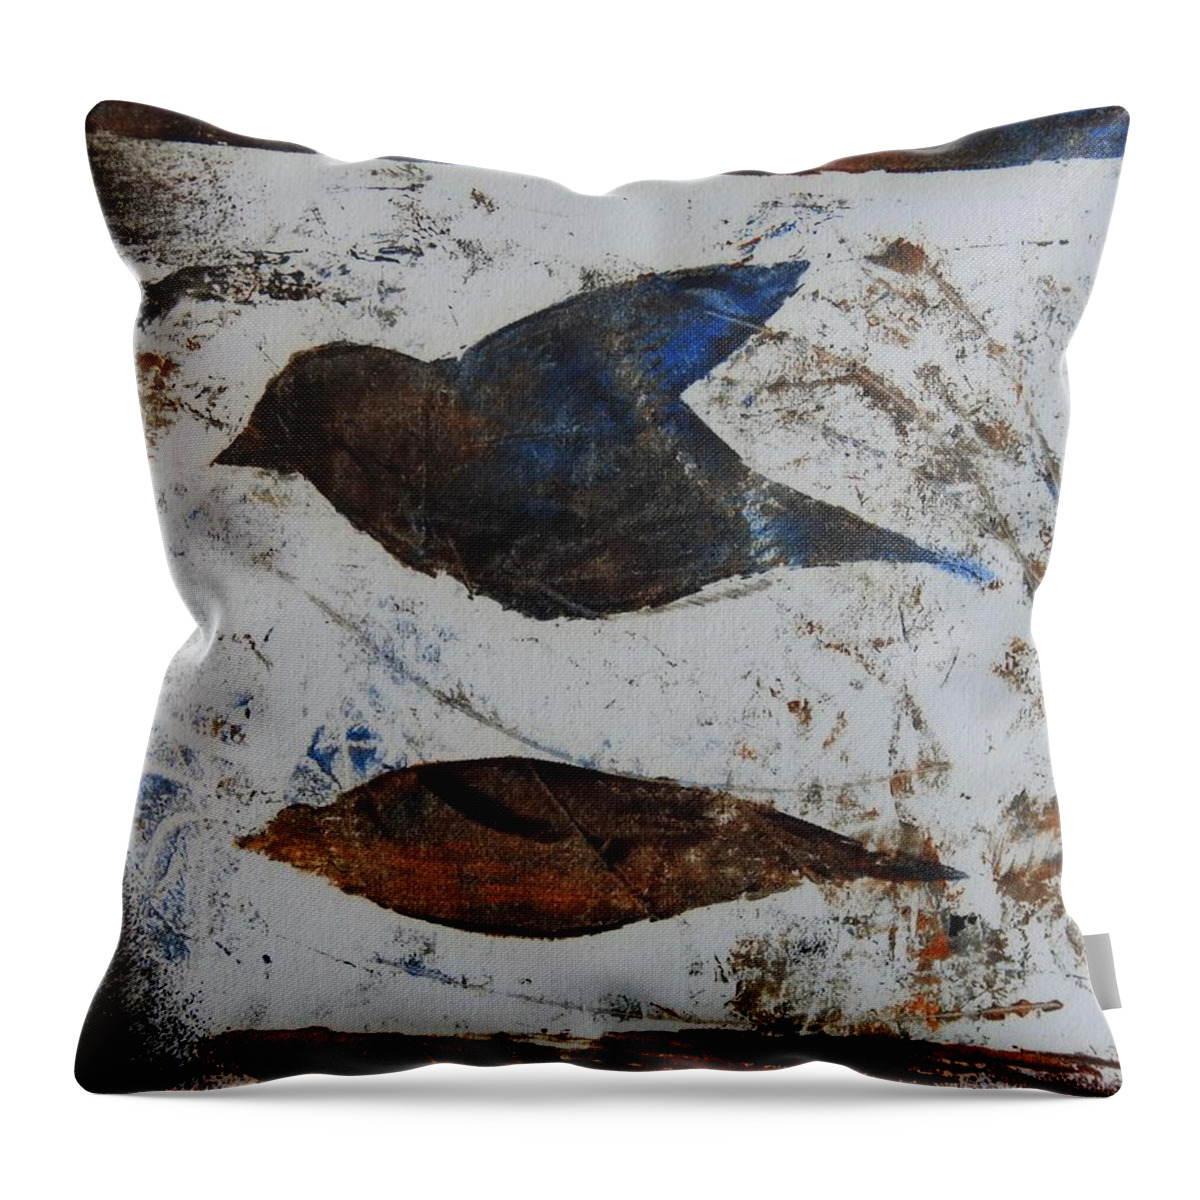 Bird Throw Pillow featuring the painting African Safari Bird by Ilona Petzer